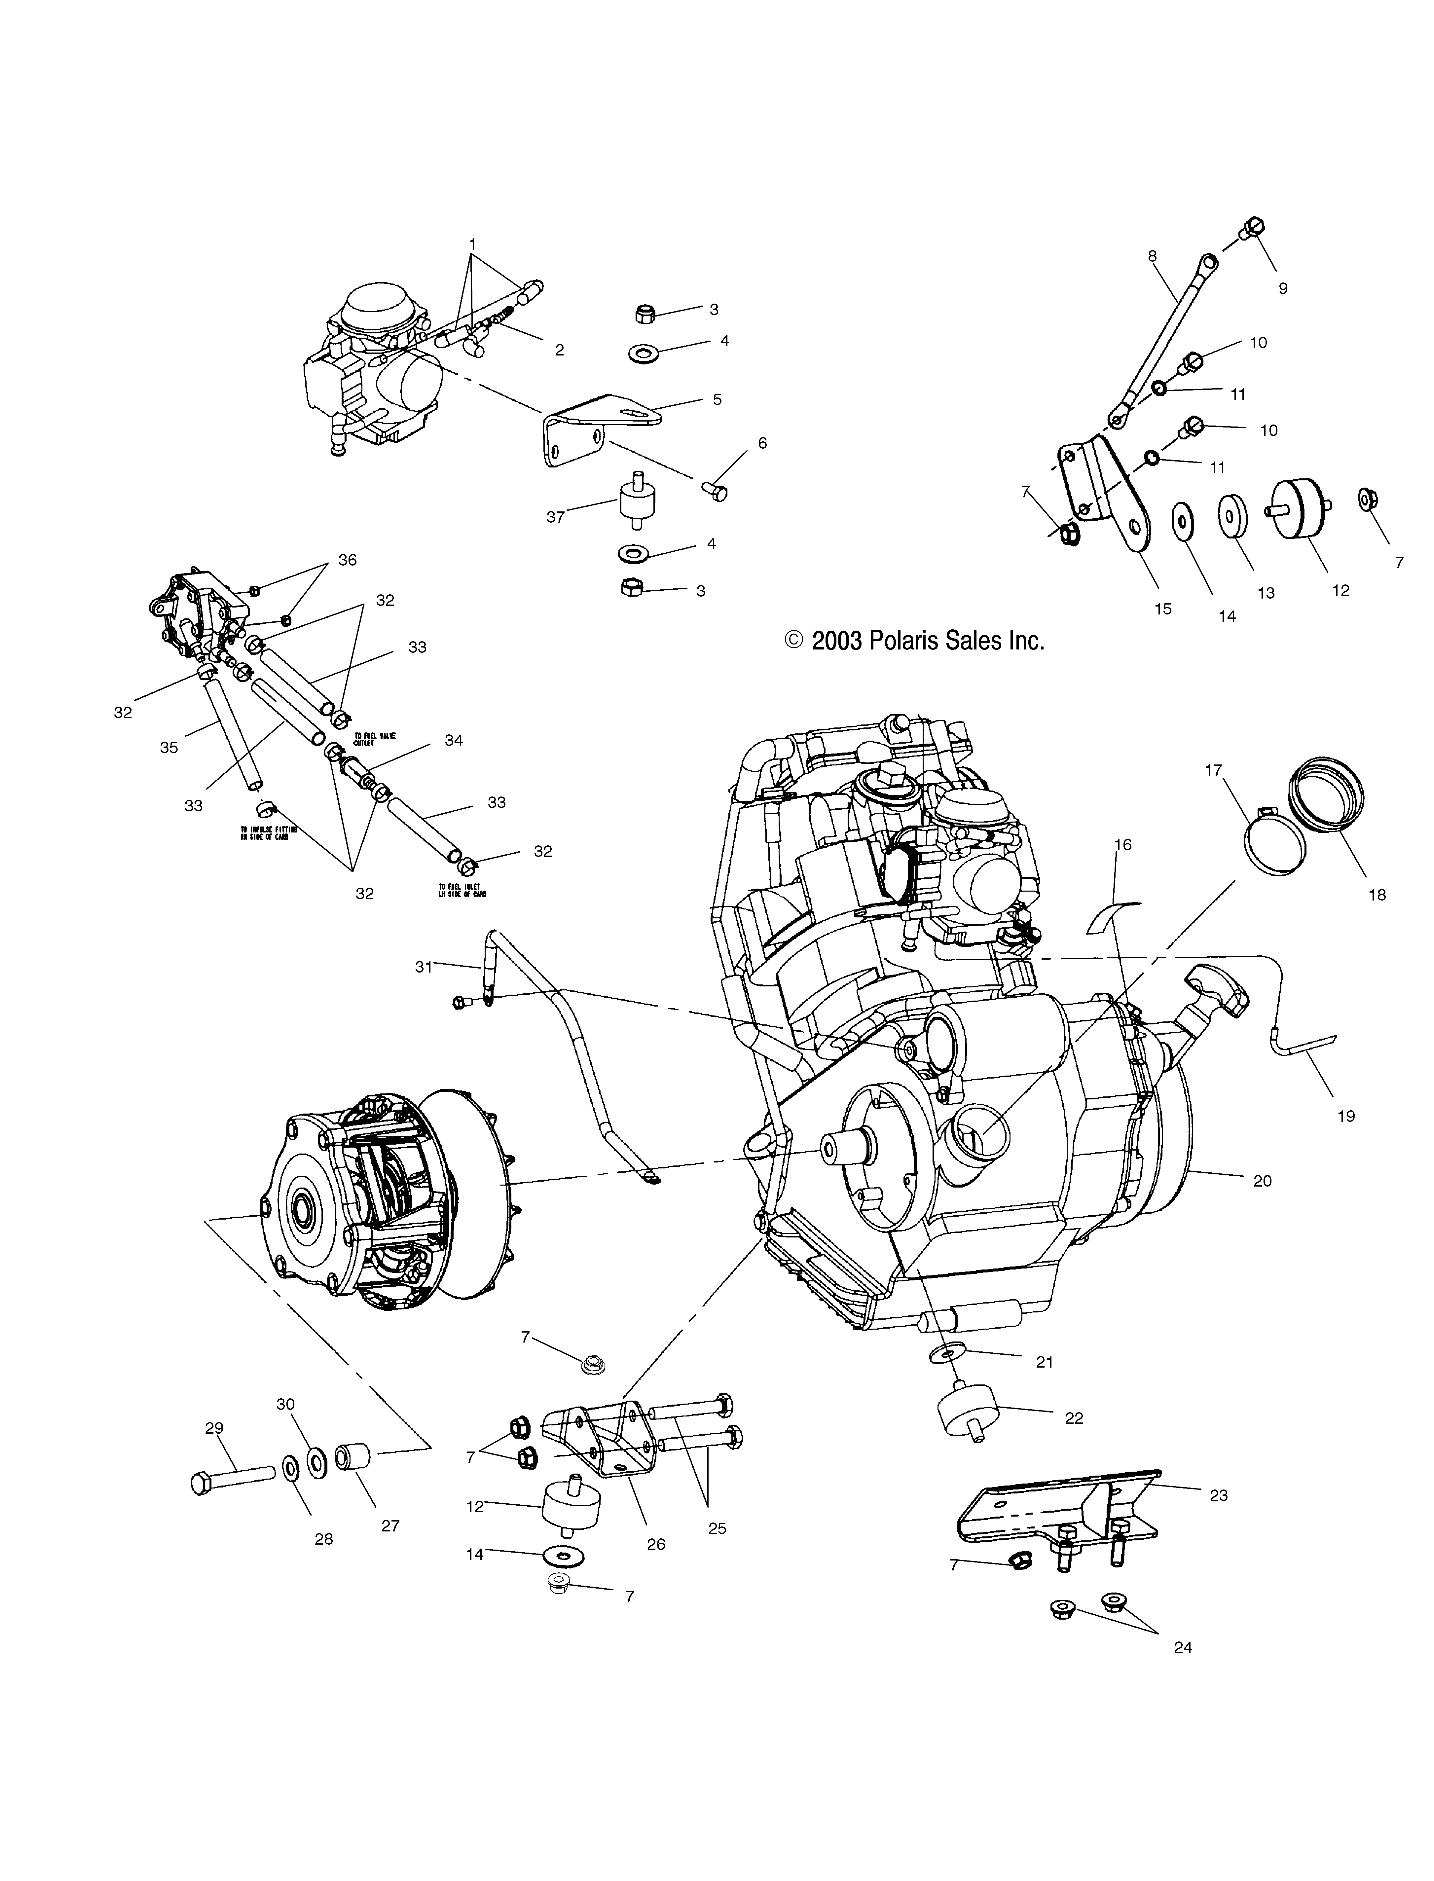 Foto diagrama Polaris que contem a peça 1211791